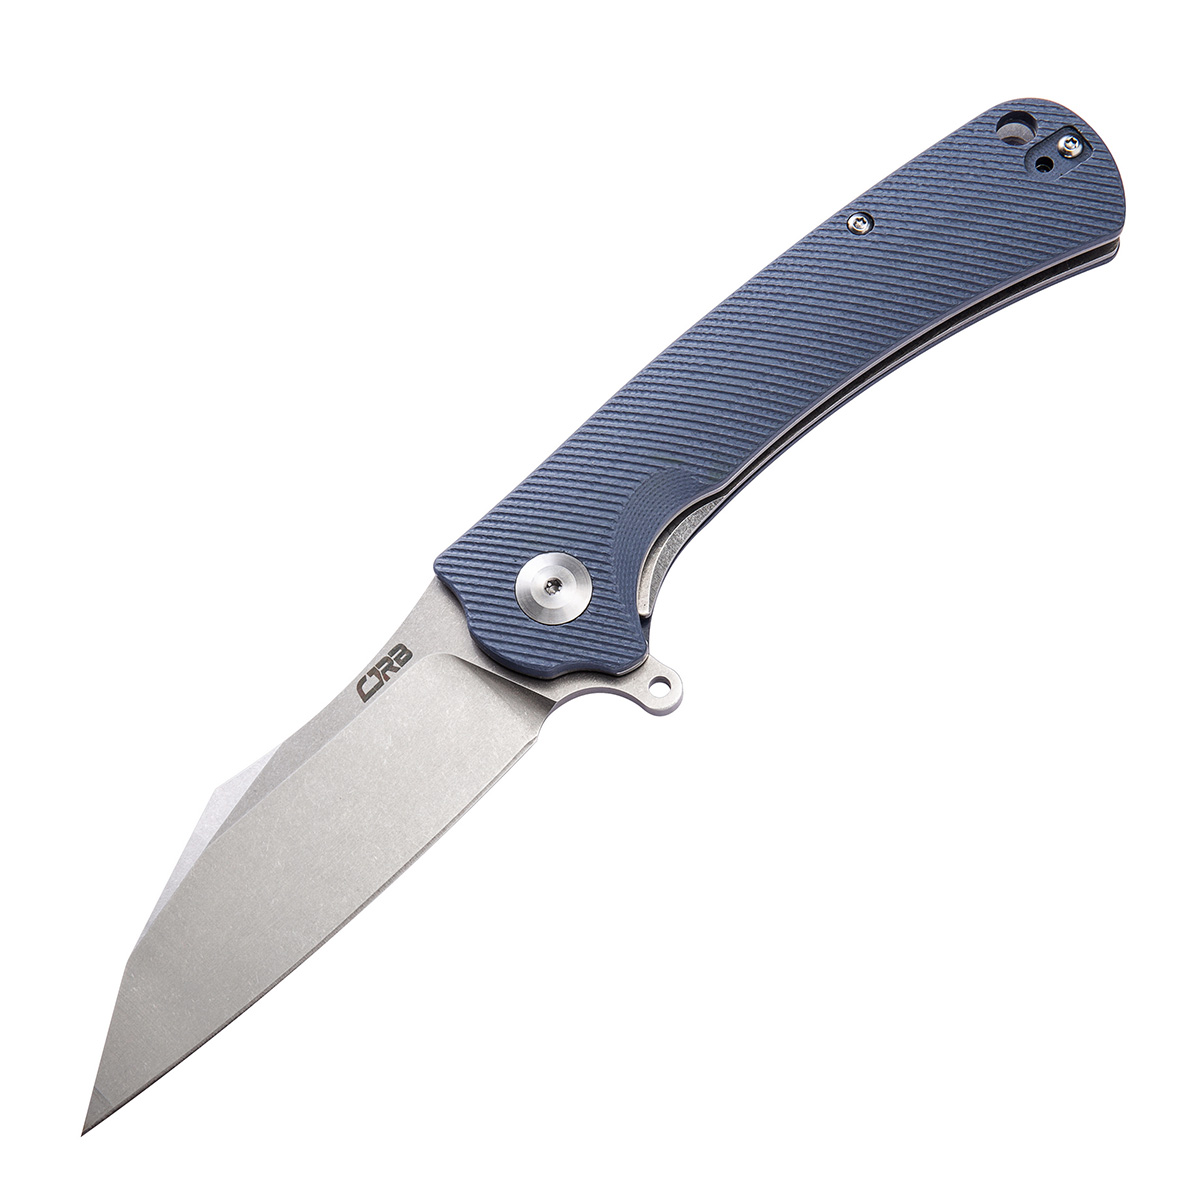 Складной нож CJRB Talla, сталь D2, рукоять G10, синий складной нож flourish kershaw 3935 сталь 8cr13mov  wash™ рукоять g 10 и carbon